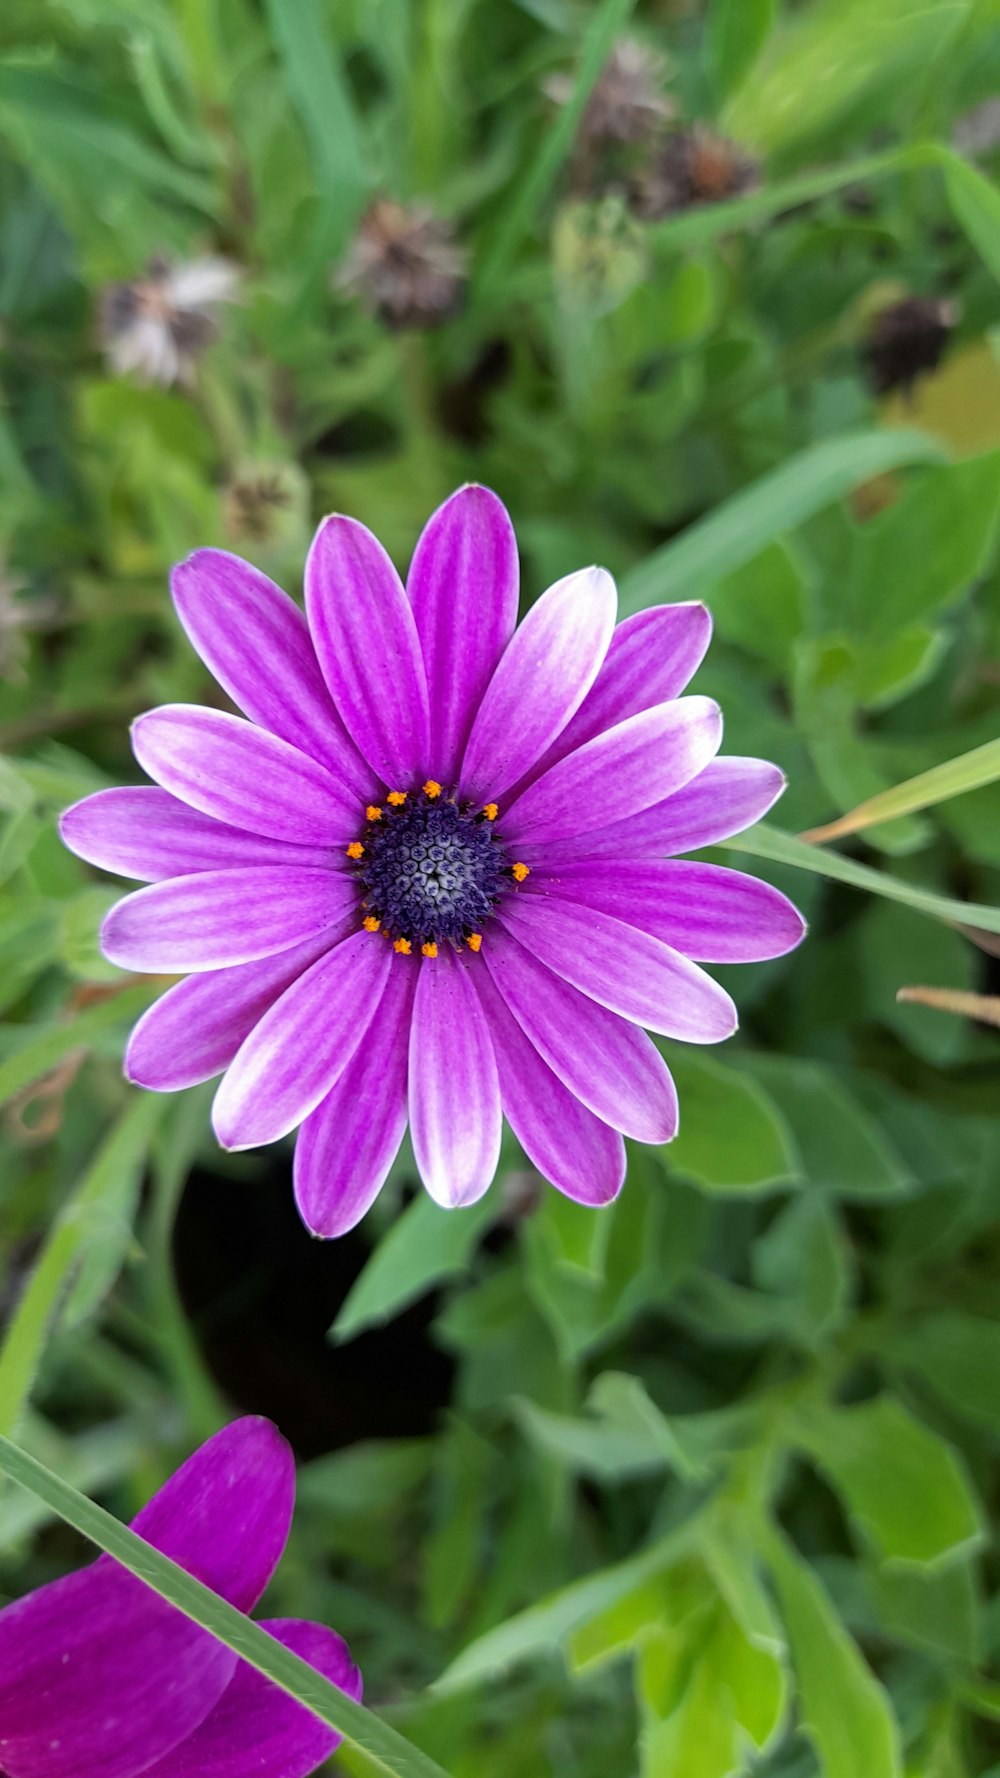 Un primer plano de una flor púrpura en un campo